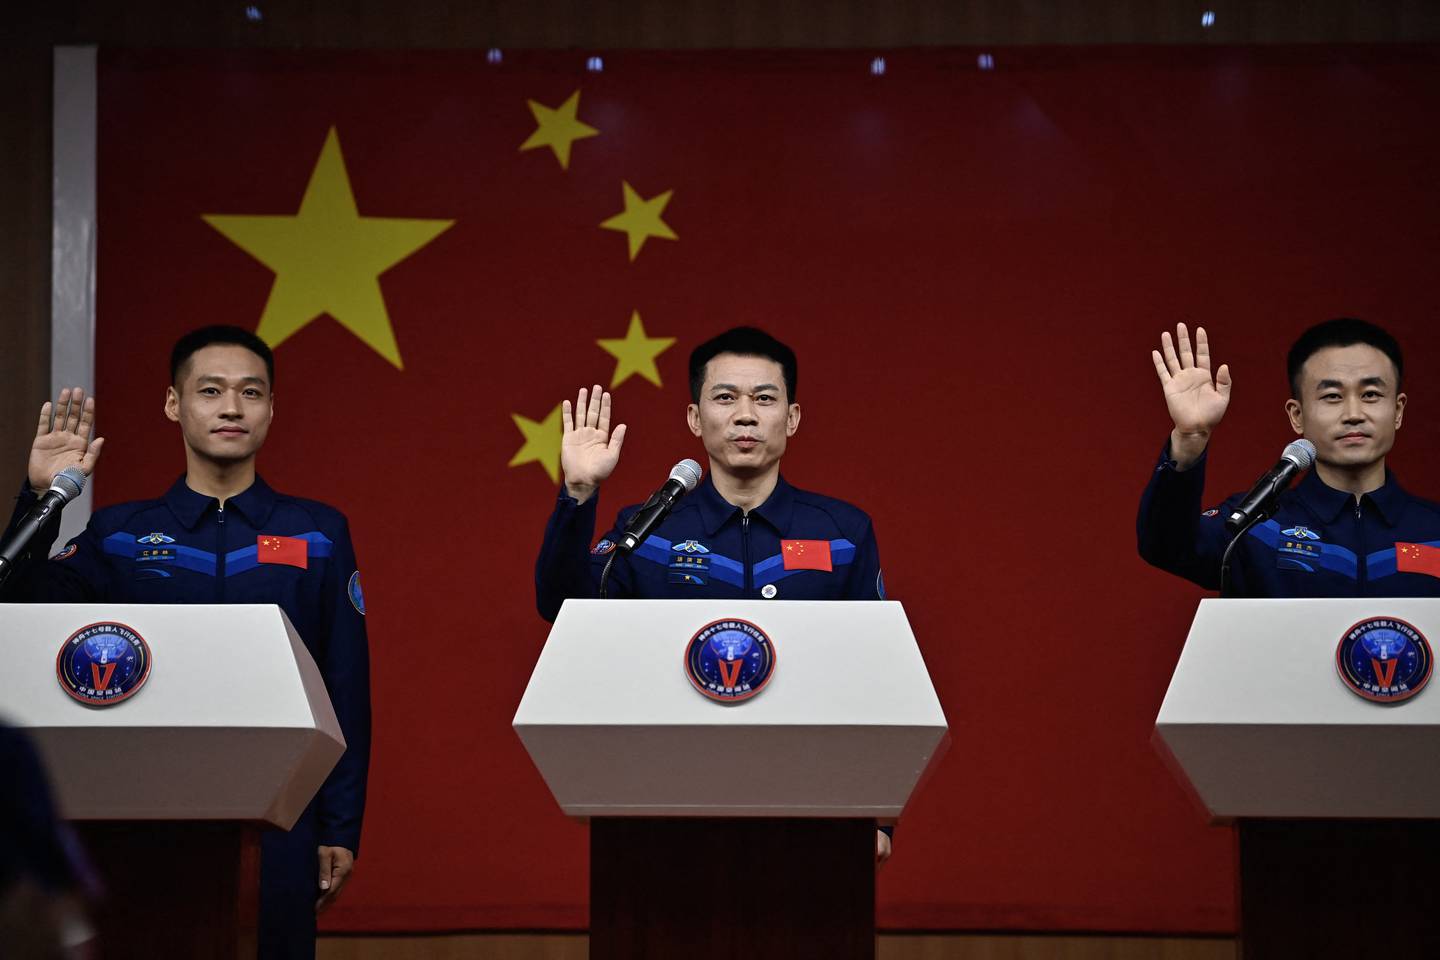 (De izq a der) Los astronautas Jiang Xinlin, Tang Hongbo y Tang Shengjie asisten a una conferencia de prensa en el Centro de lanzamiento de satélites de Jiuquan, en la provincia de Gansu.